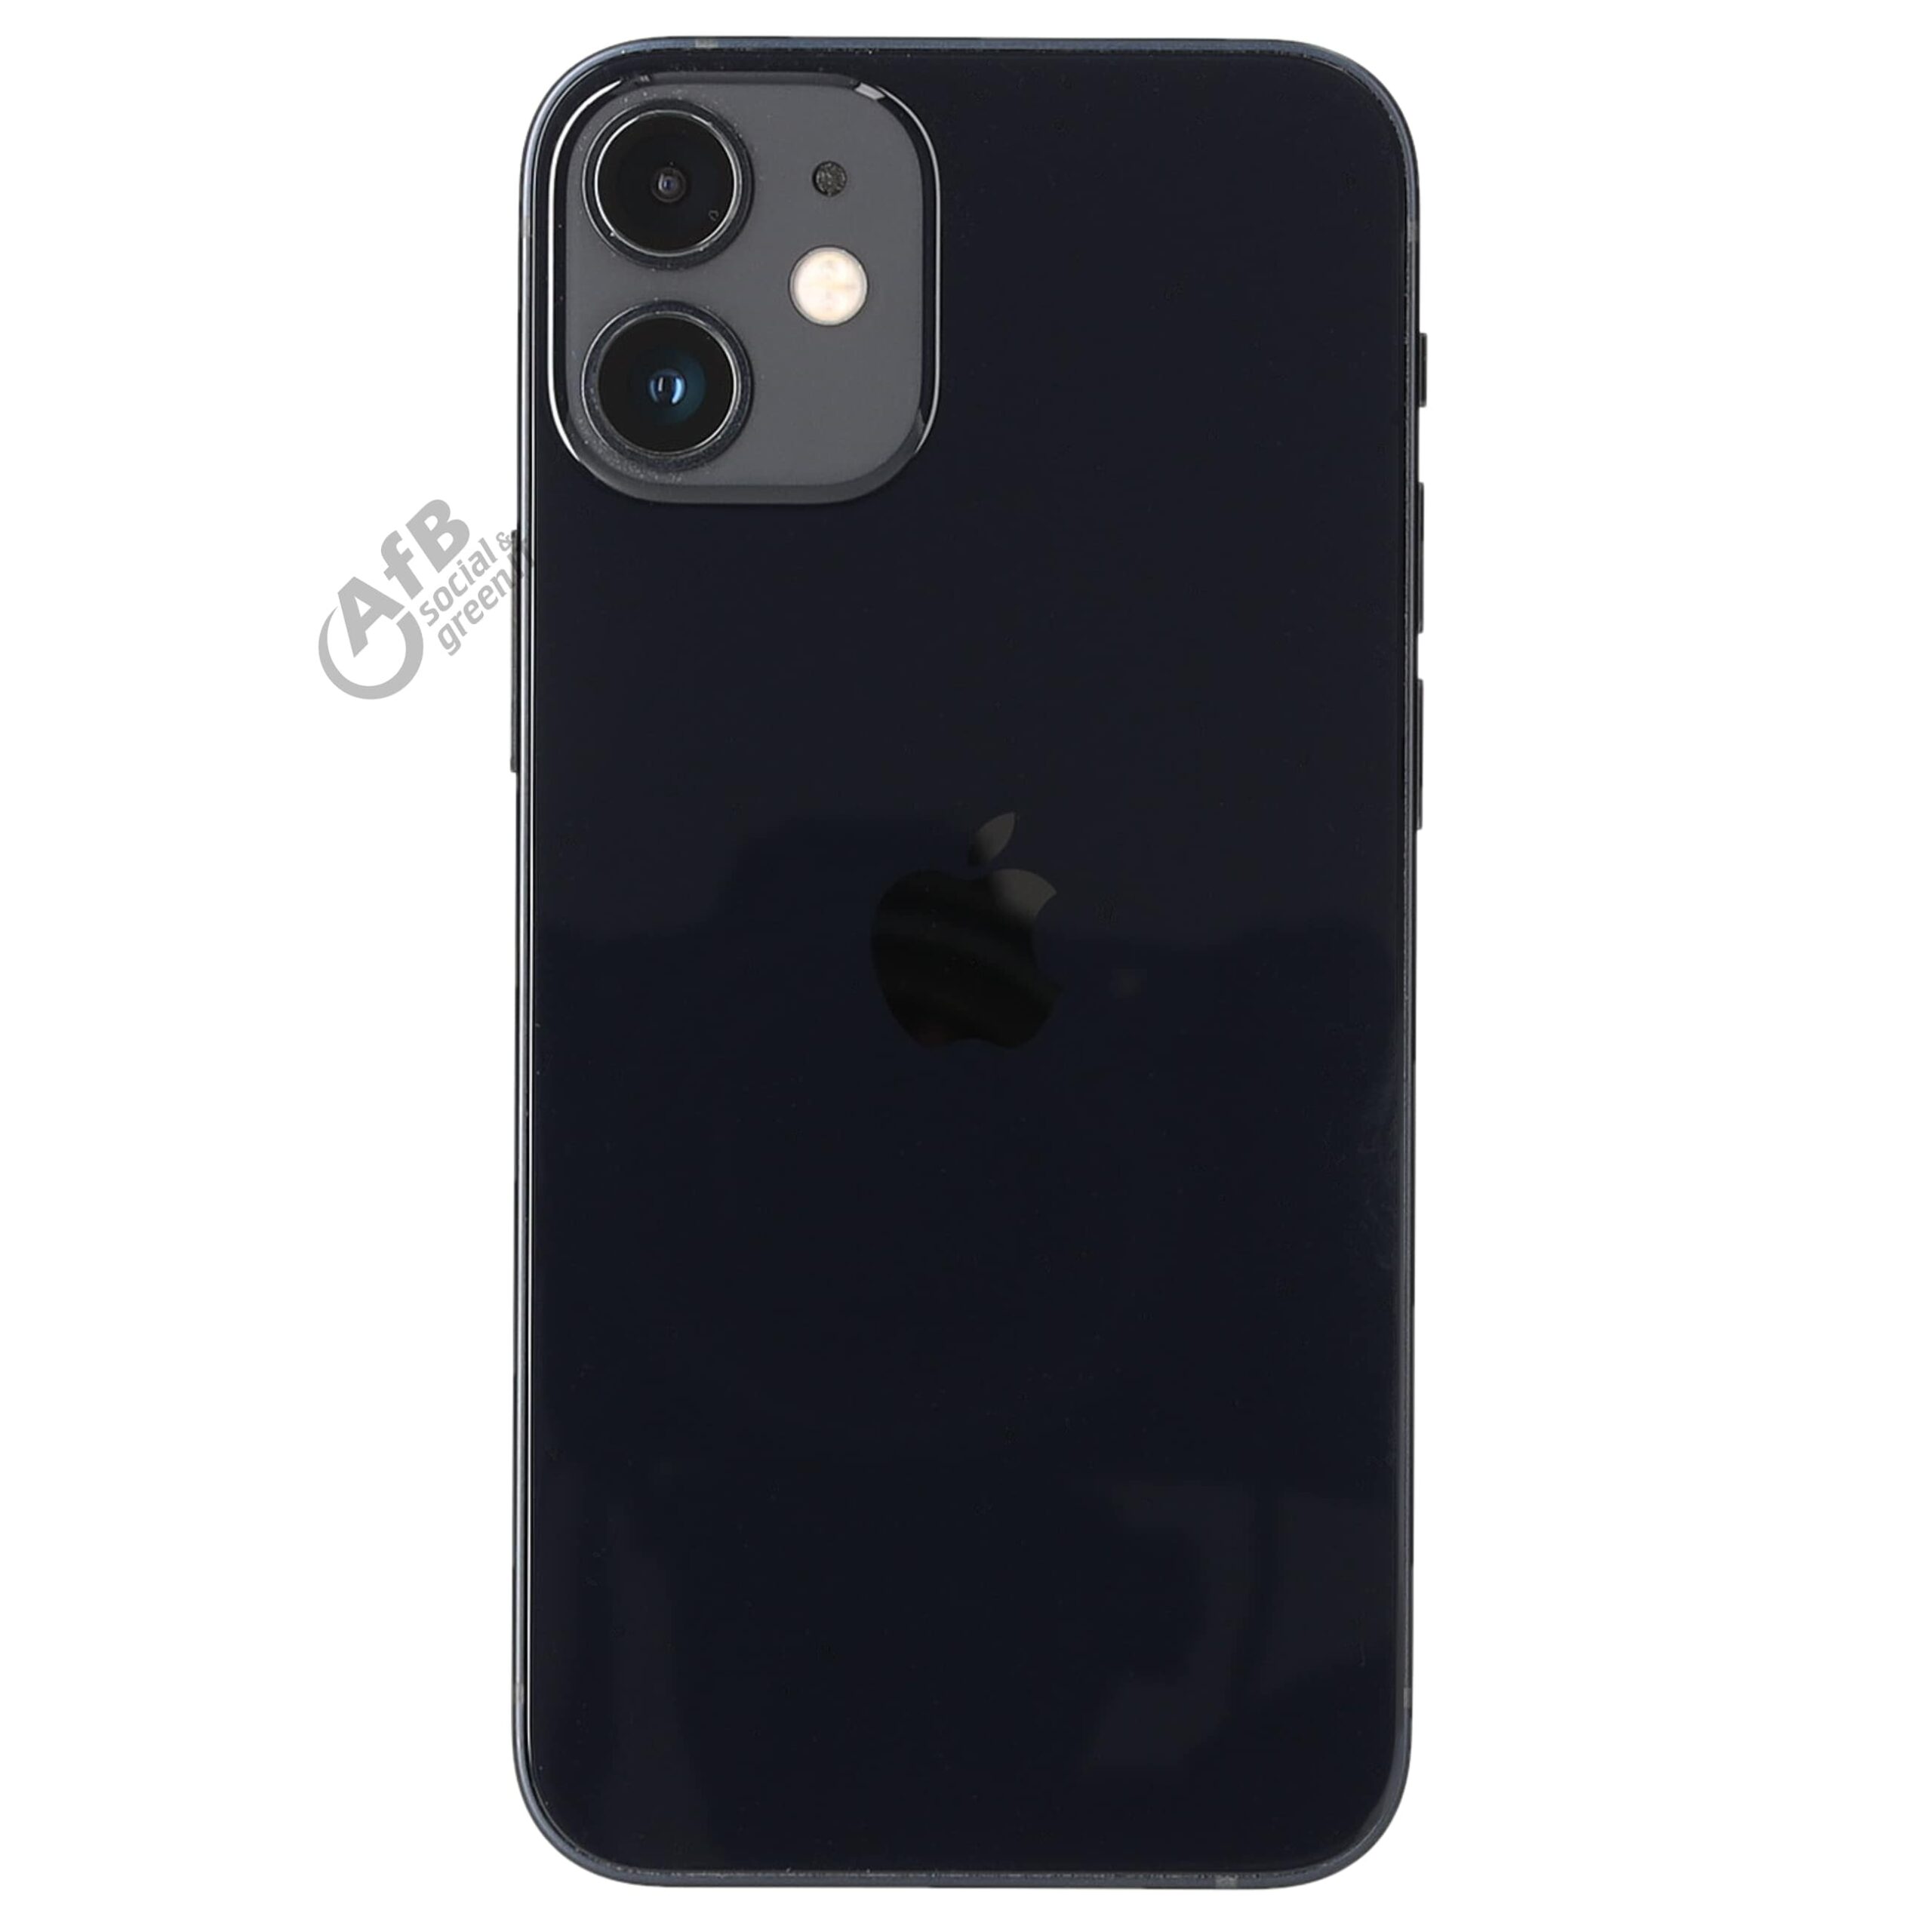 Apple iPhone 12 miniGut – AfB-refurbished